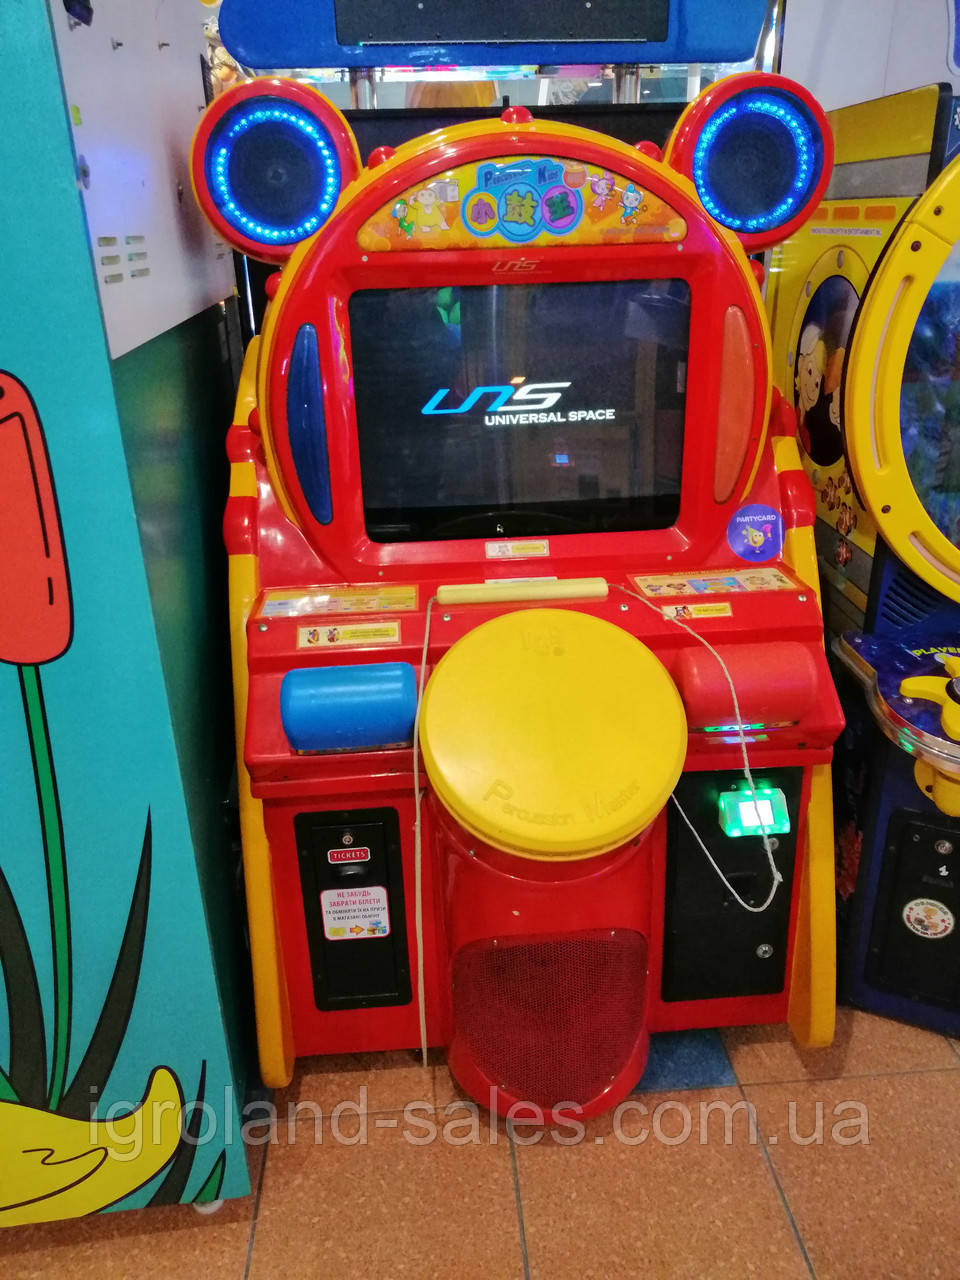 Игровые автомат для u new online casino 2021